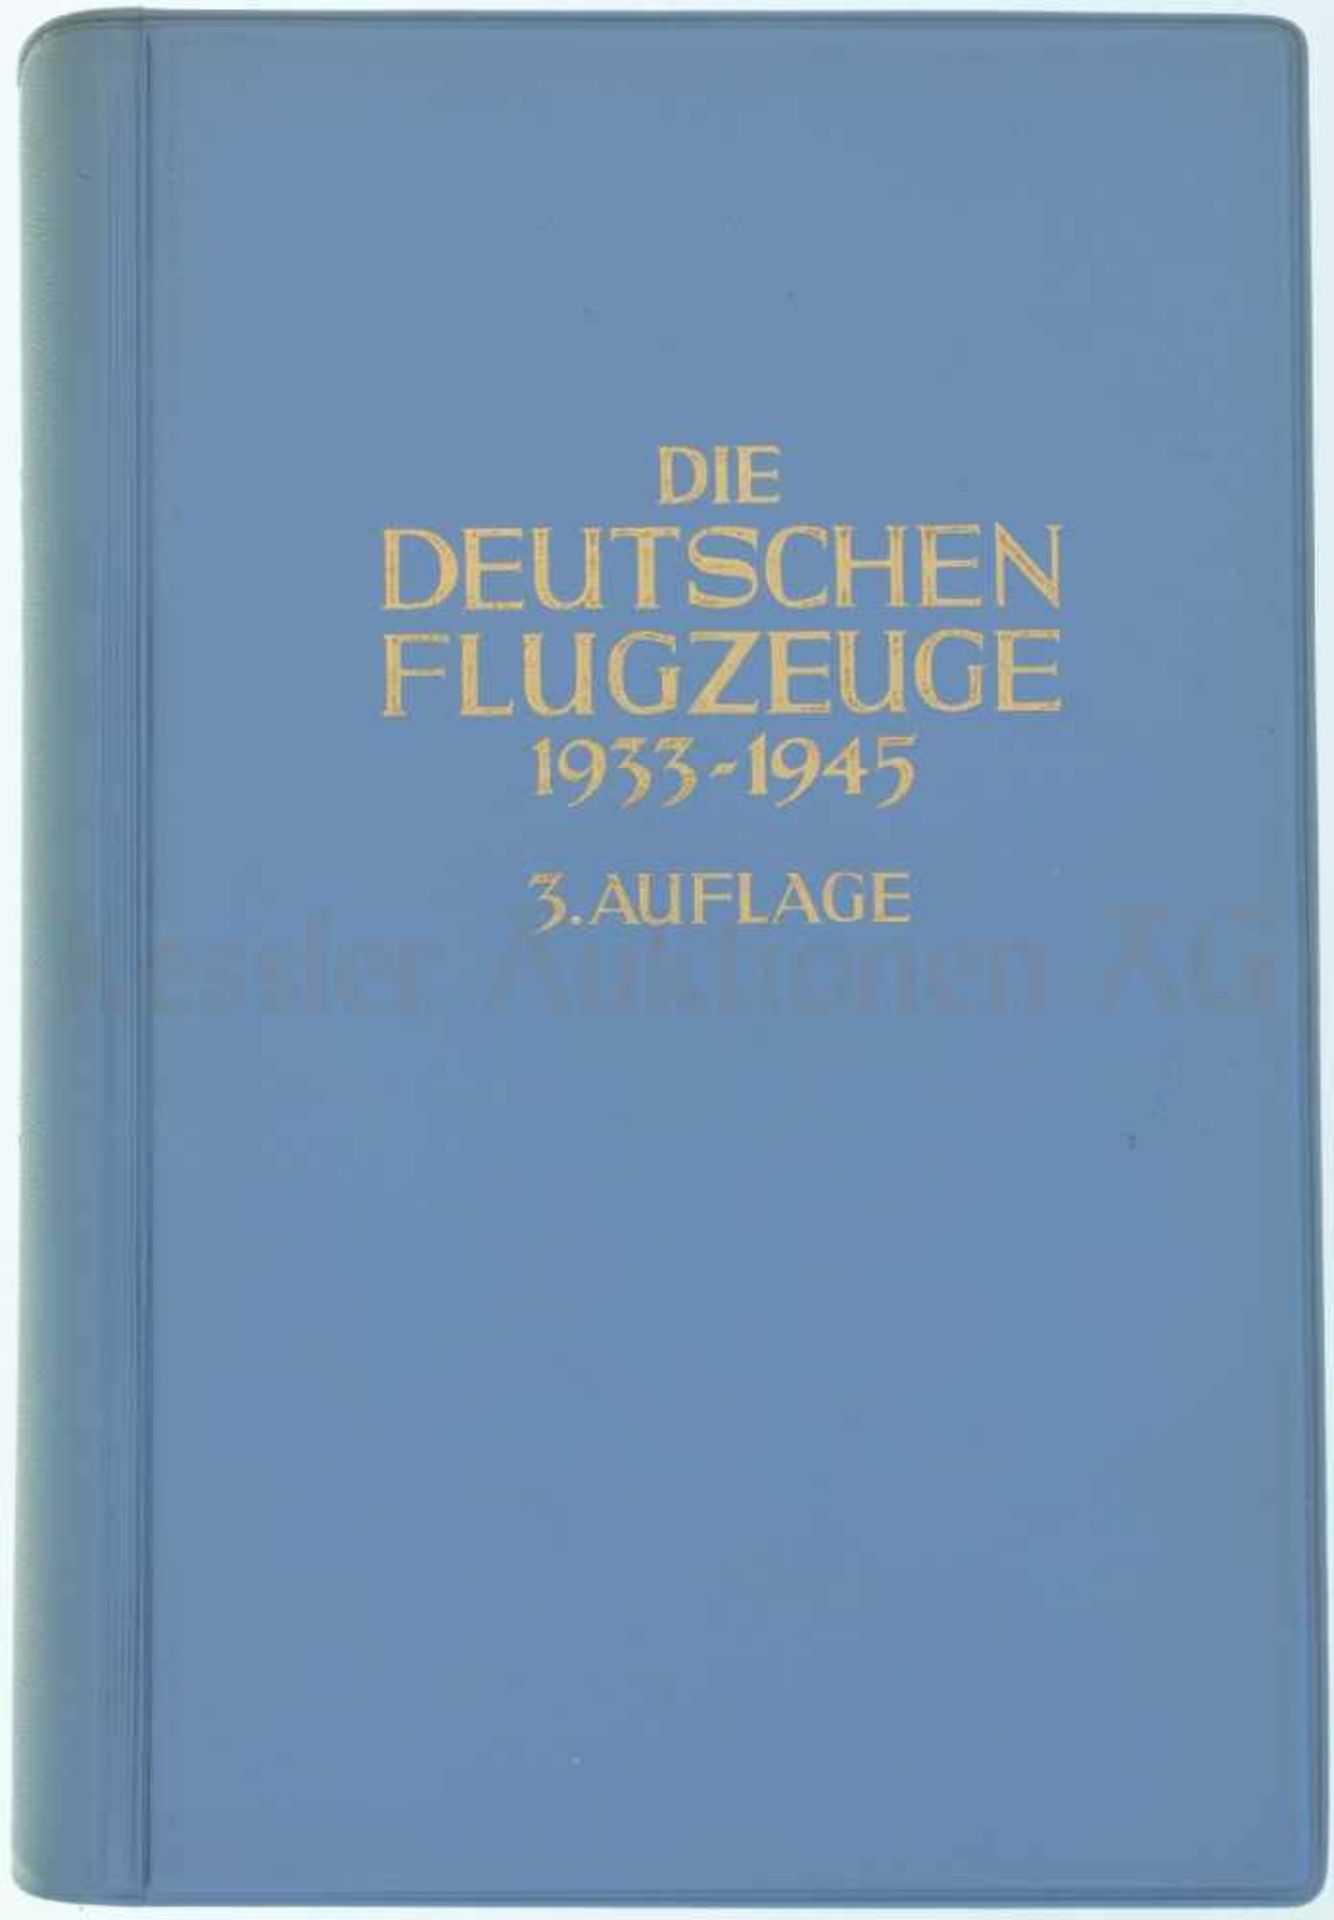 Die deutschen Flugzeuge, 1933-1945 3. verbesserte Auflage von 1968, Autoren Karlheinz Kens und Heinz